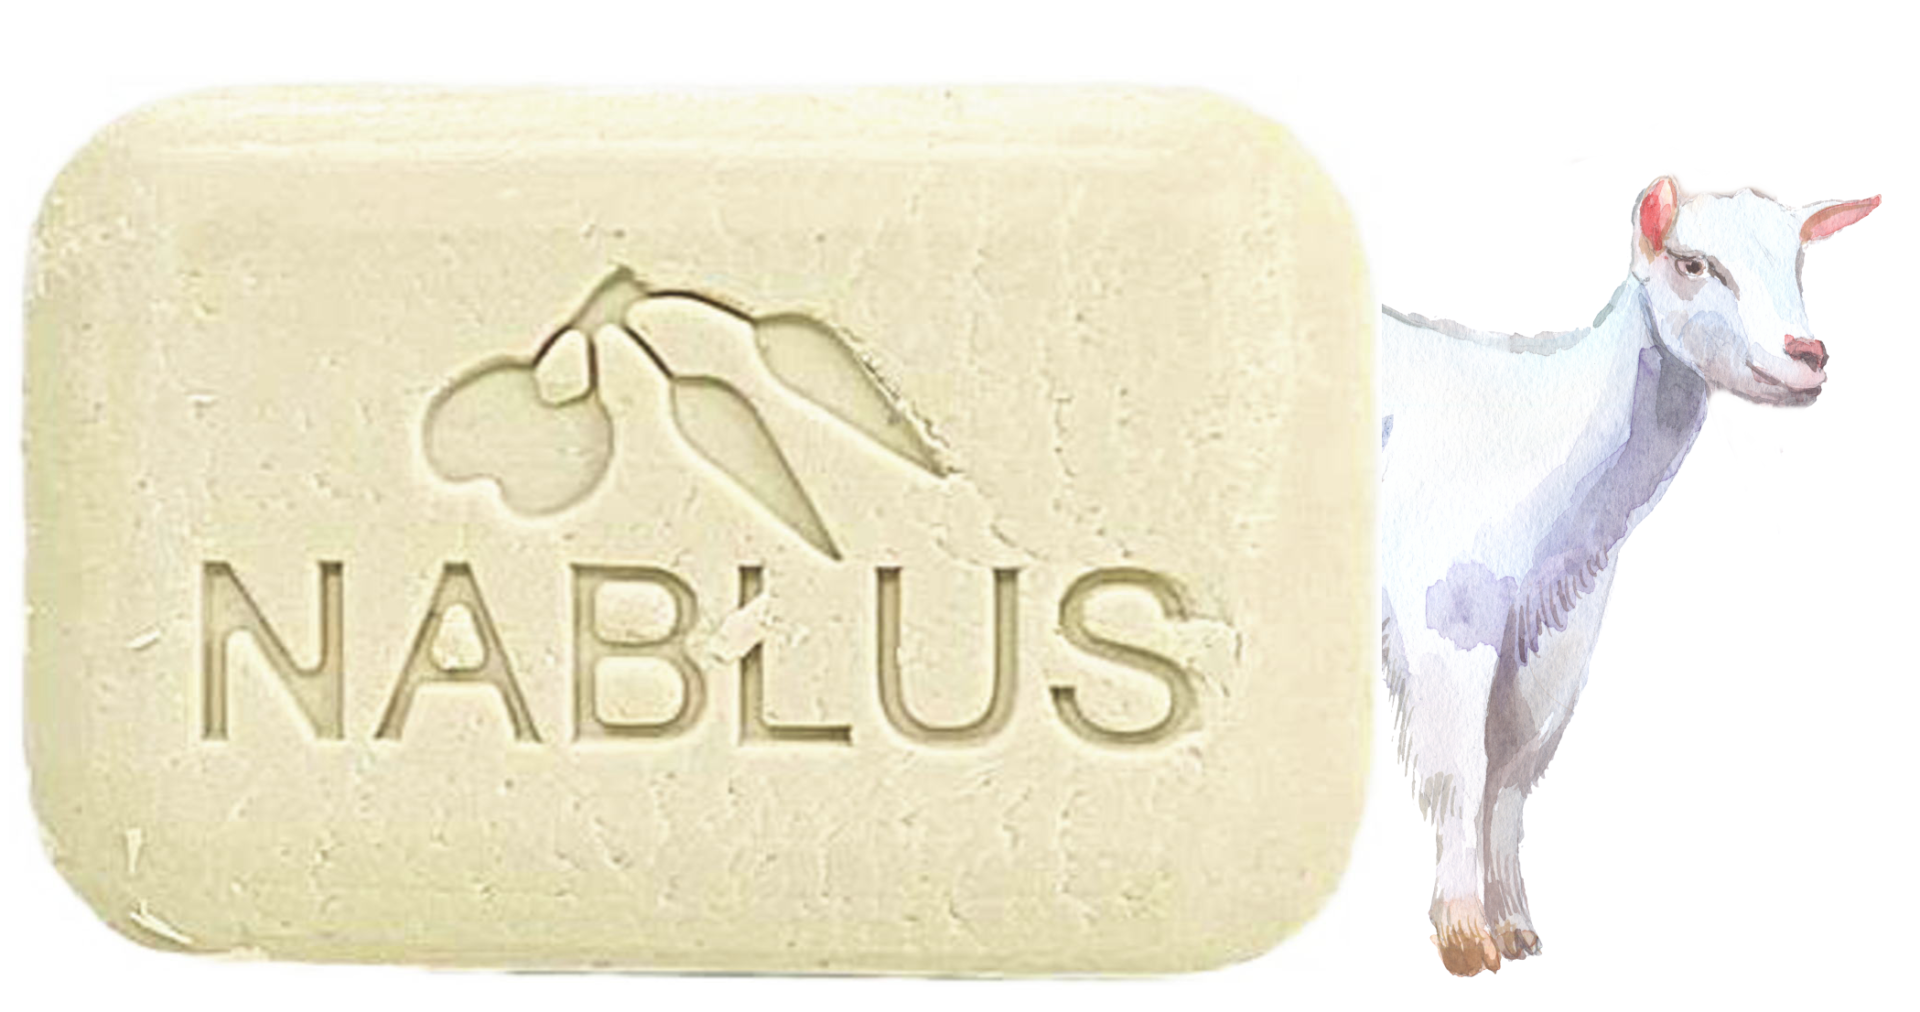 NABLUS SOAP ナーブルスソープ 山羊ミルク石鹸 ヤギミルク石鹸 – もち肌・ツヤ